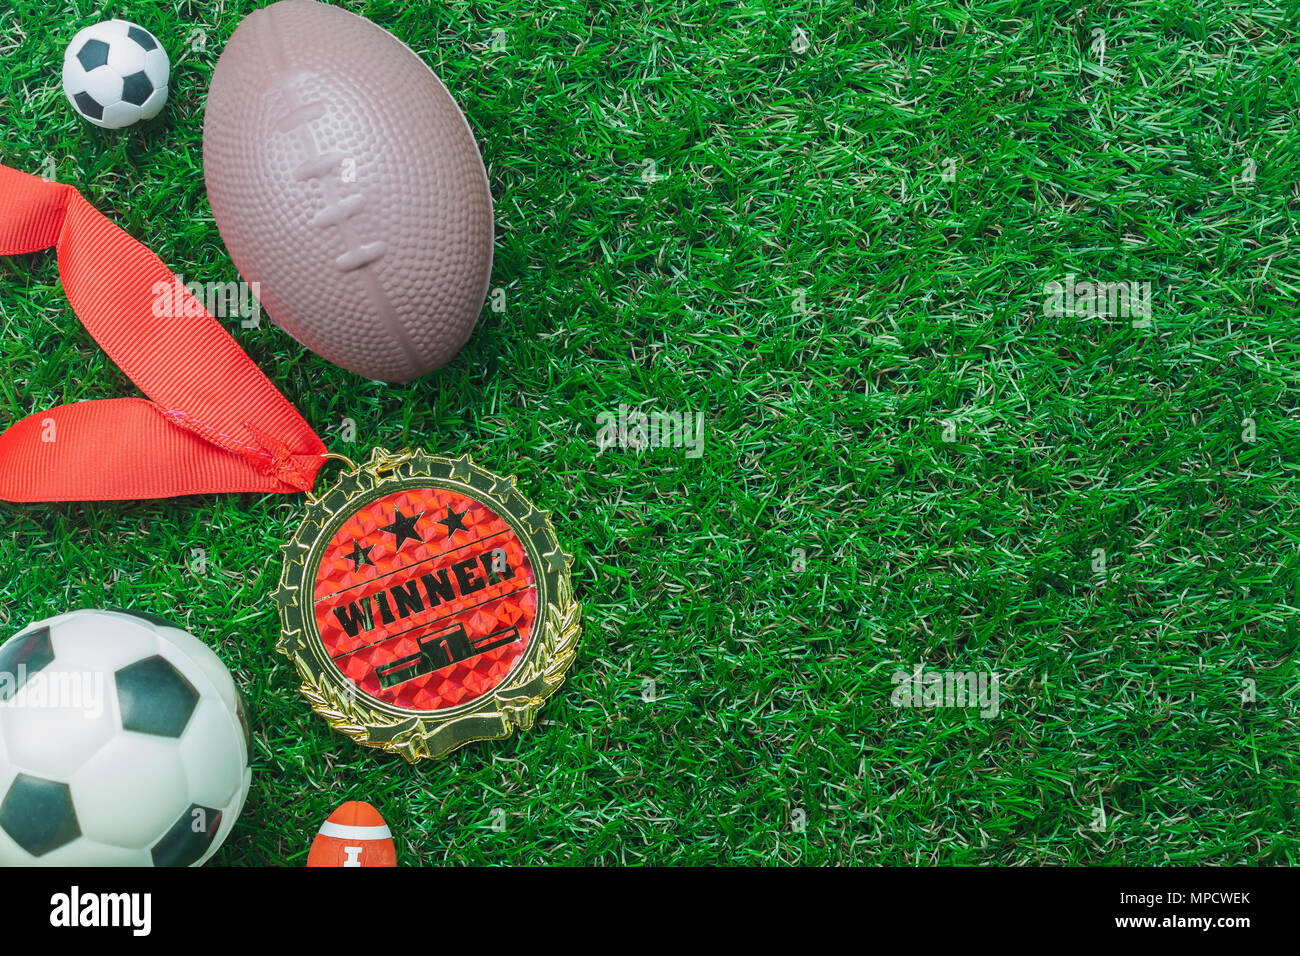 Tabelle Ansicht von oben Luftbild Fußball oder Fußball-Turnier der Saison Hintergrund. Flach Ball mit Zubehör Dekorationen Objekte auf dem künstlichen grünen g Stockfoto